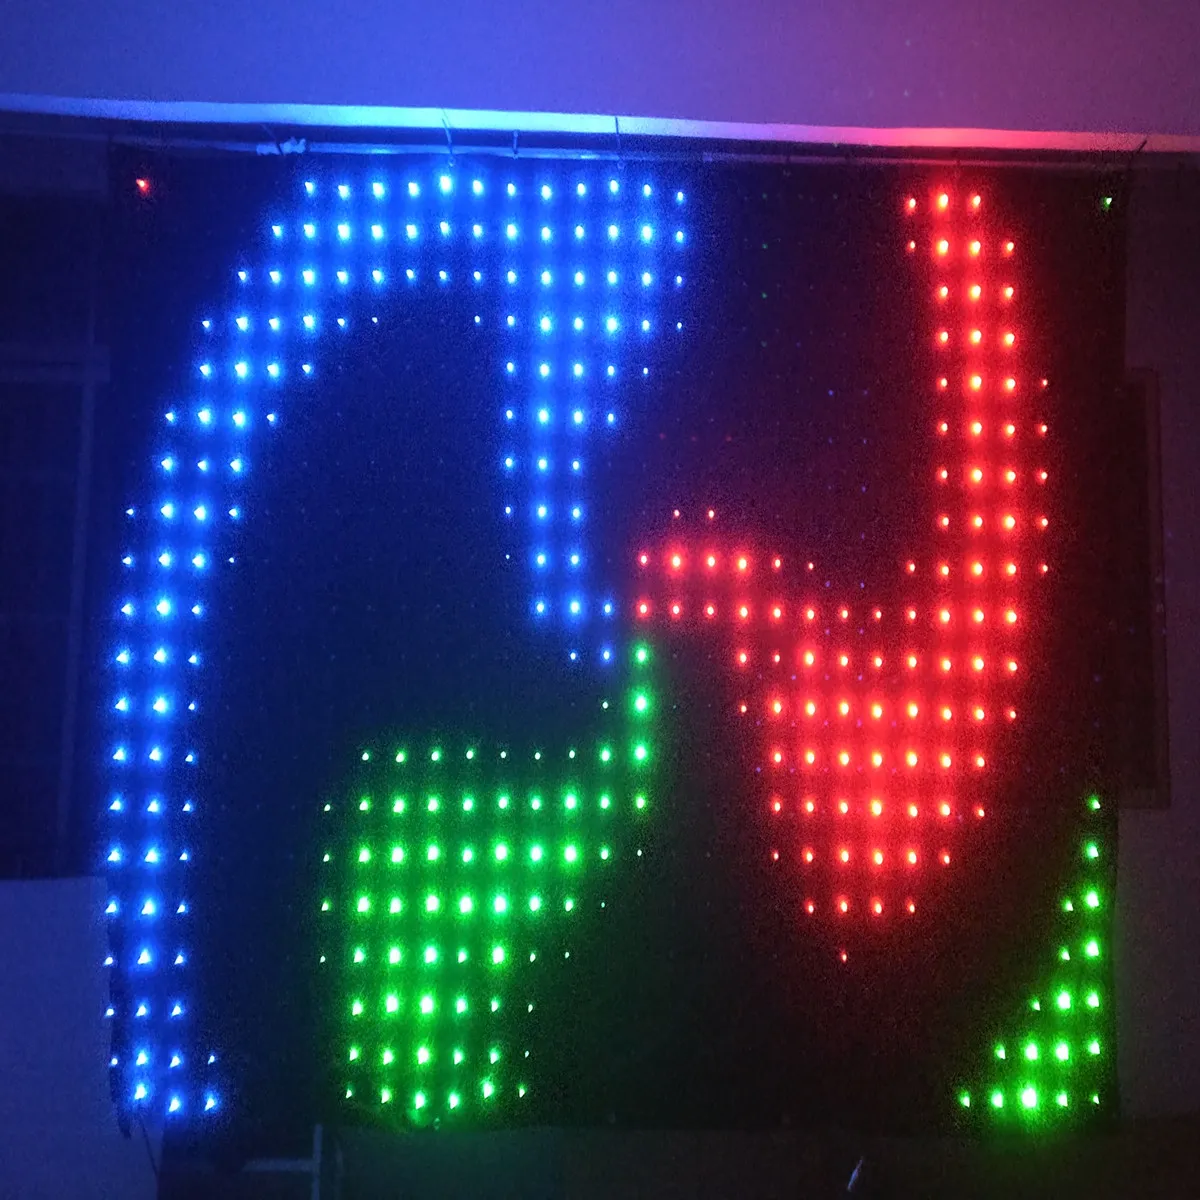 P9 2x4M RGB SMD LEDビデオカーテン背景照明効果DJの背景PC制御に最適